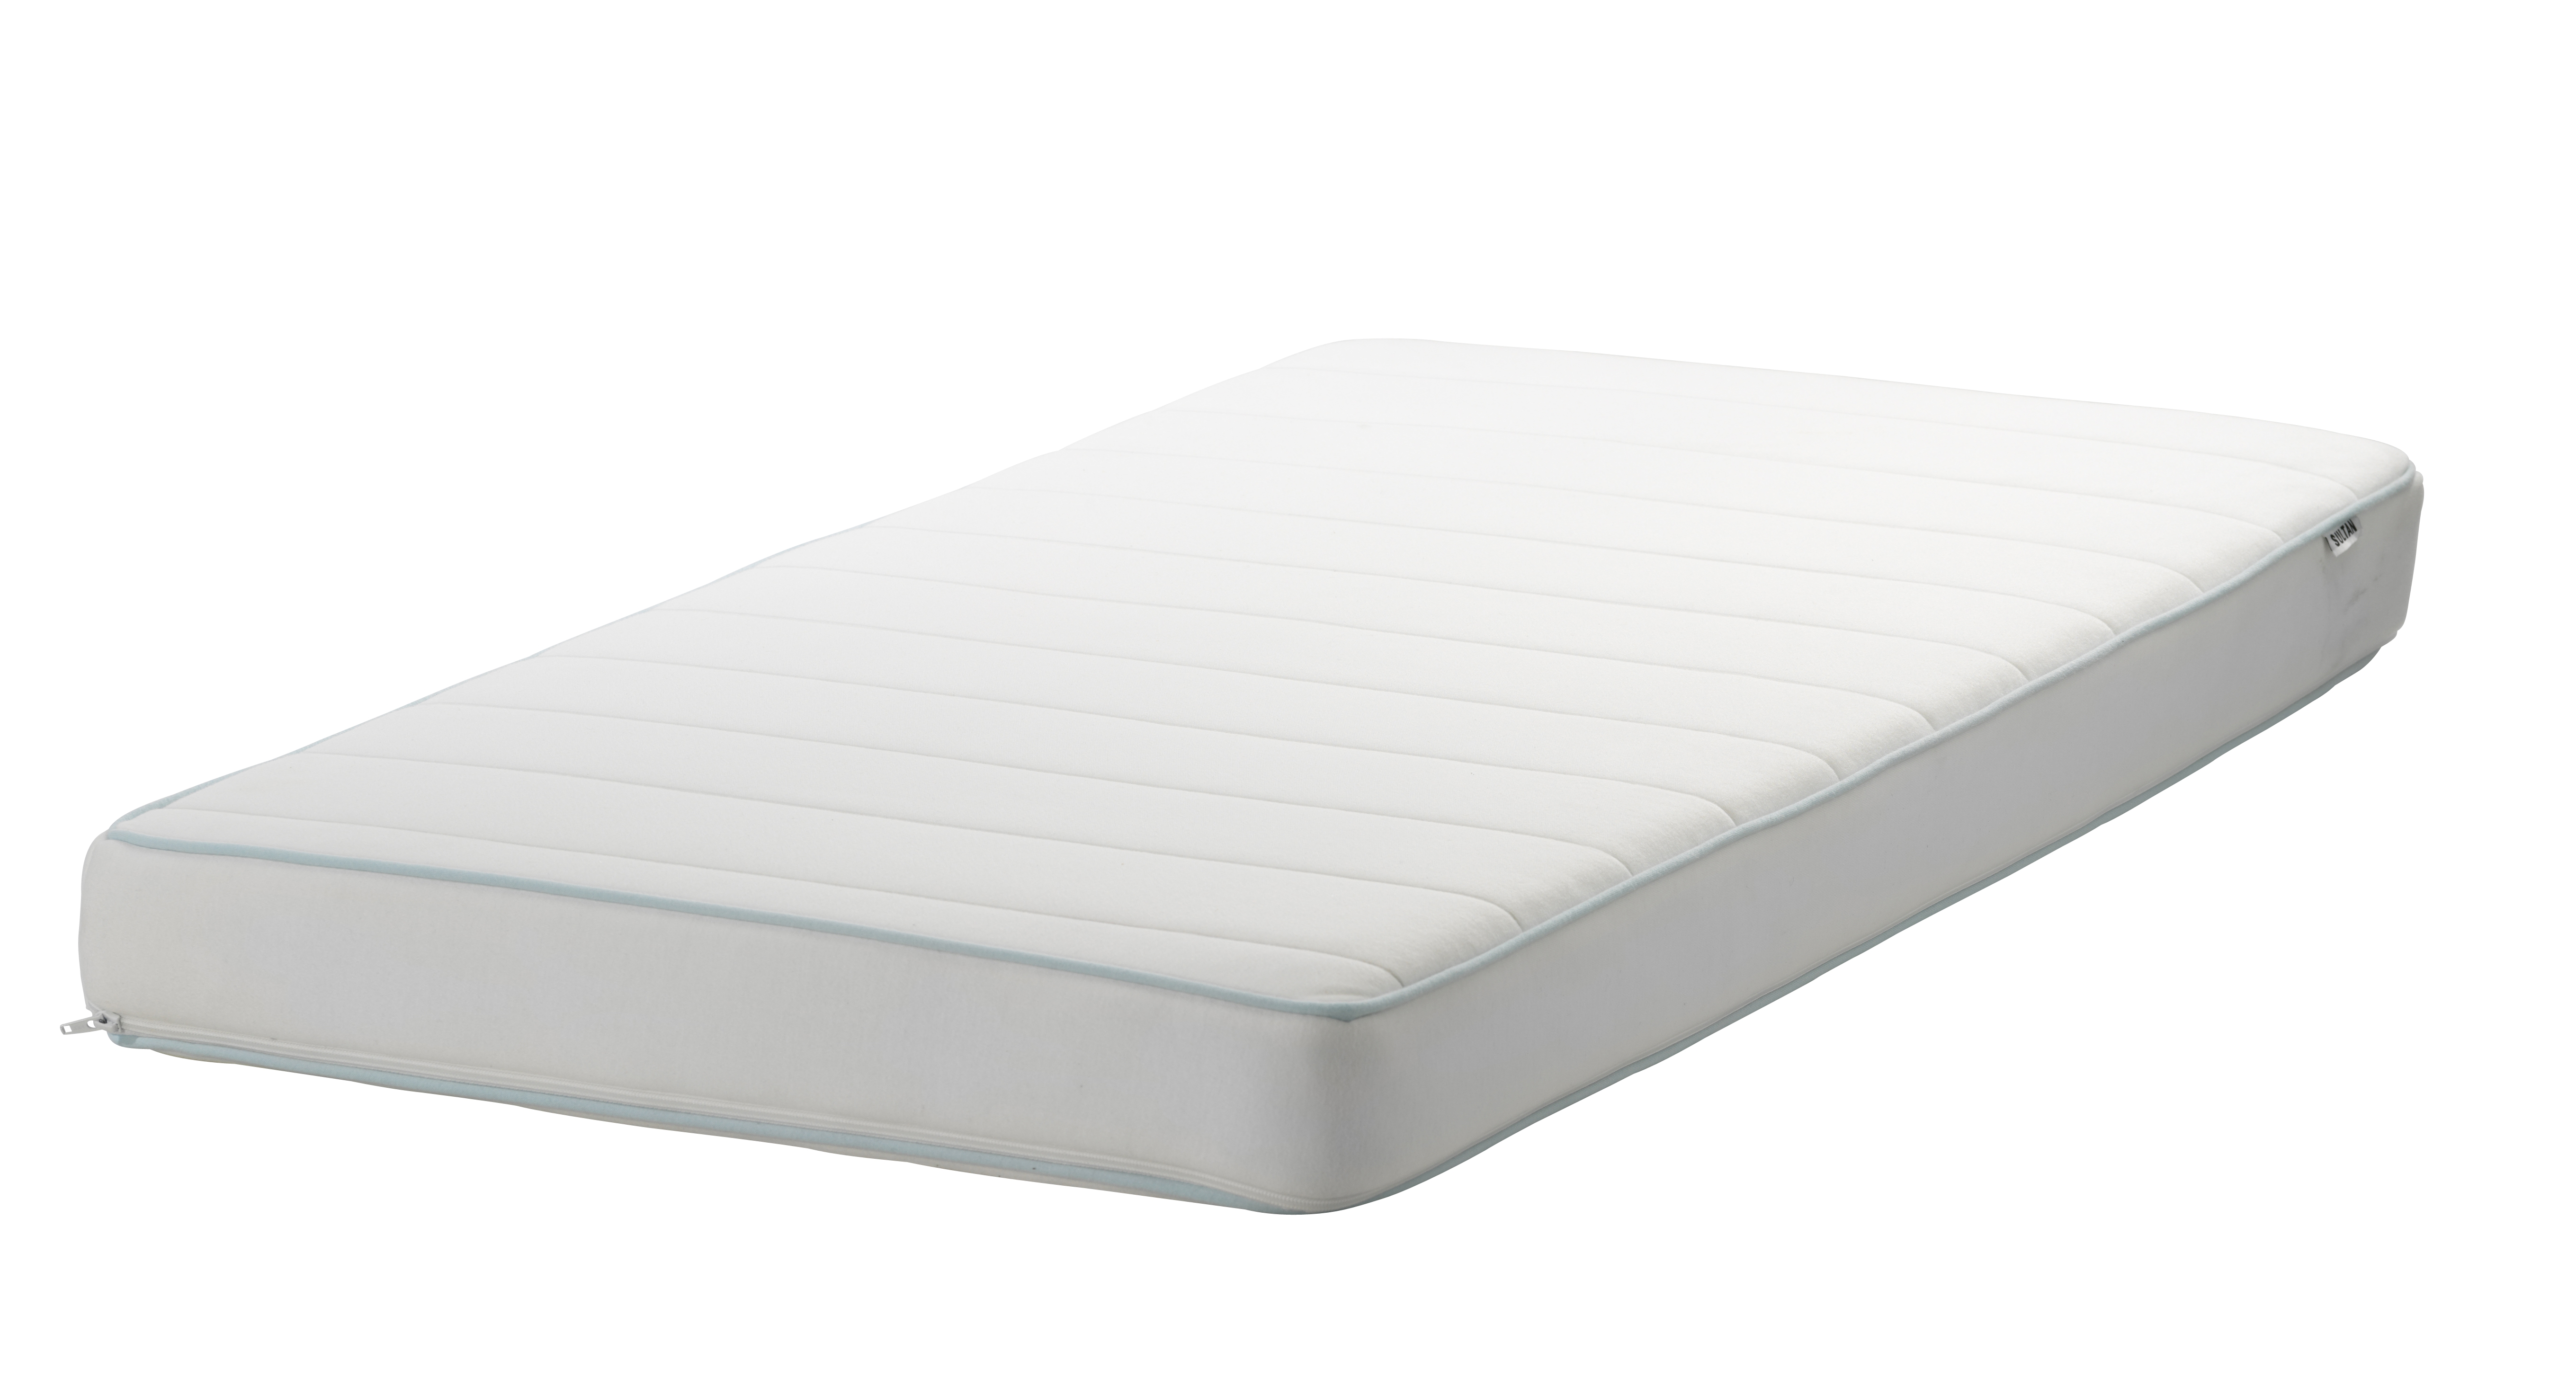 mattress for crib ikea